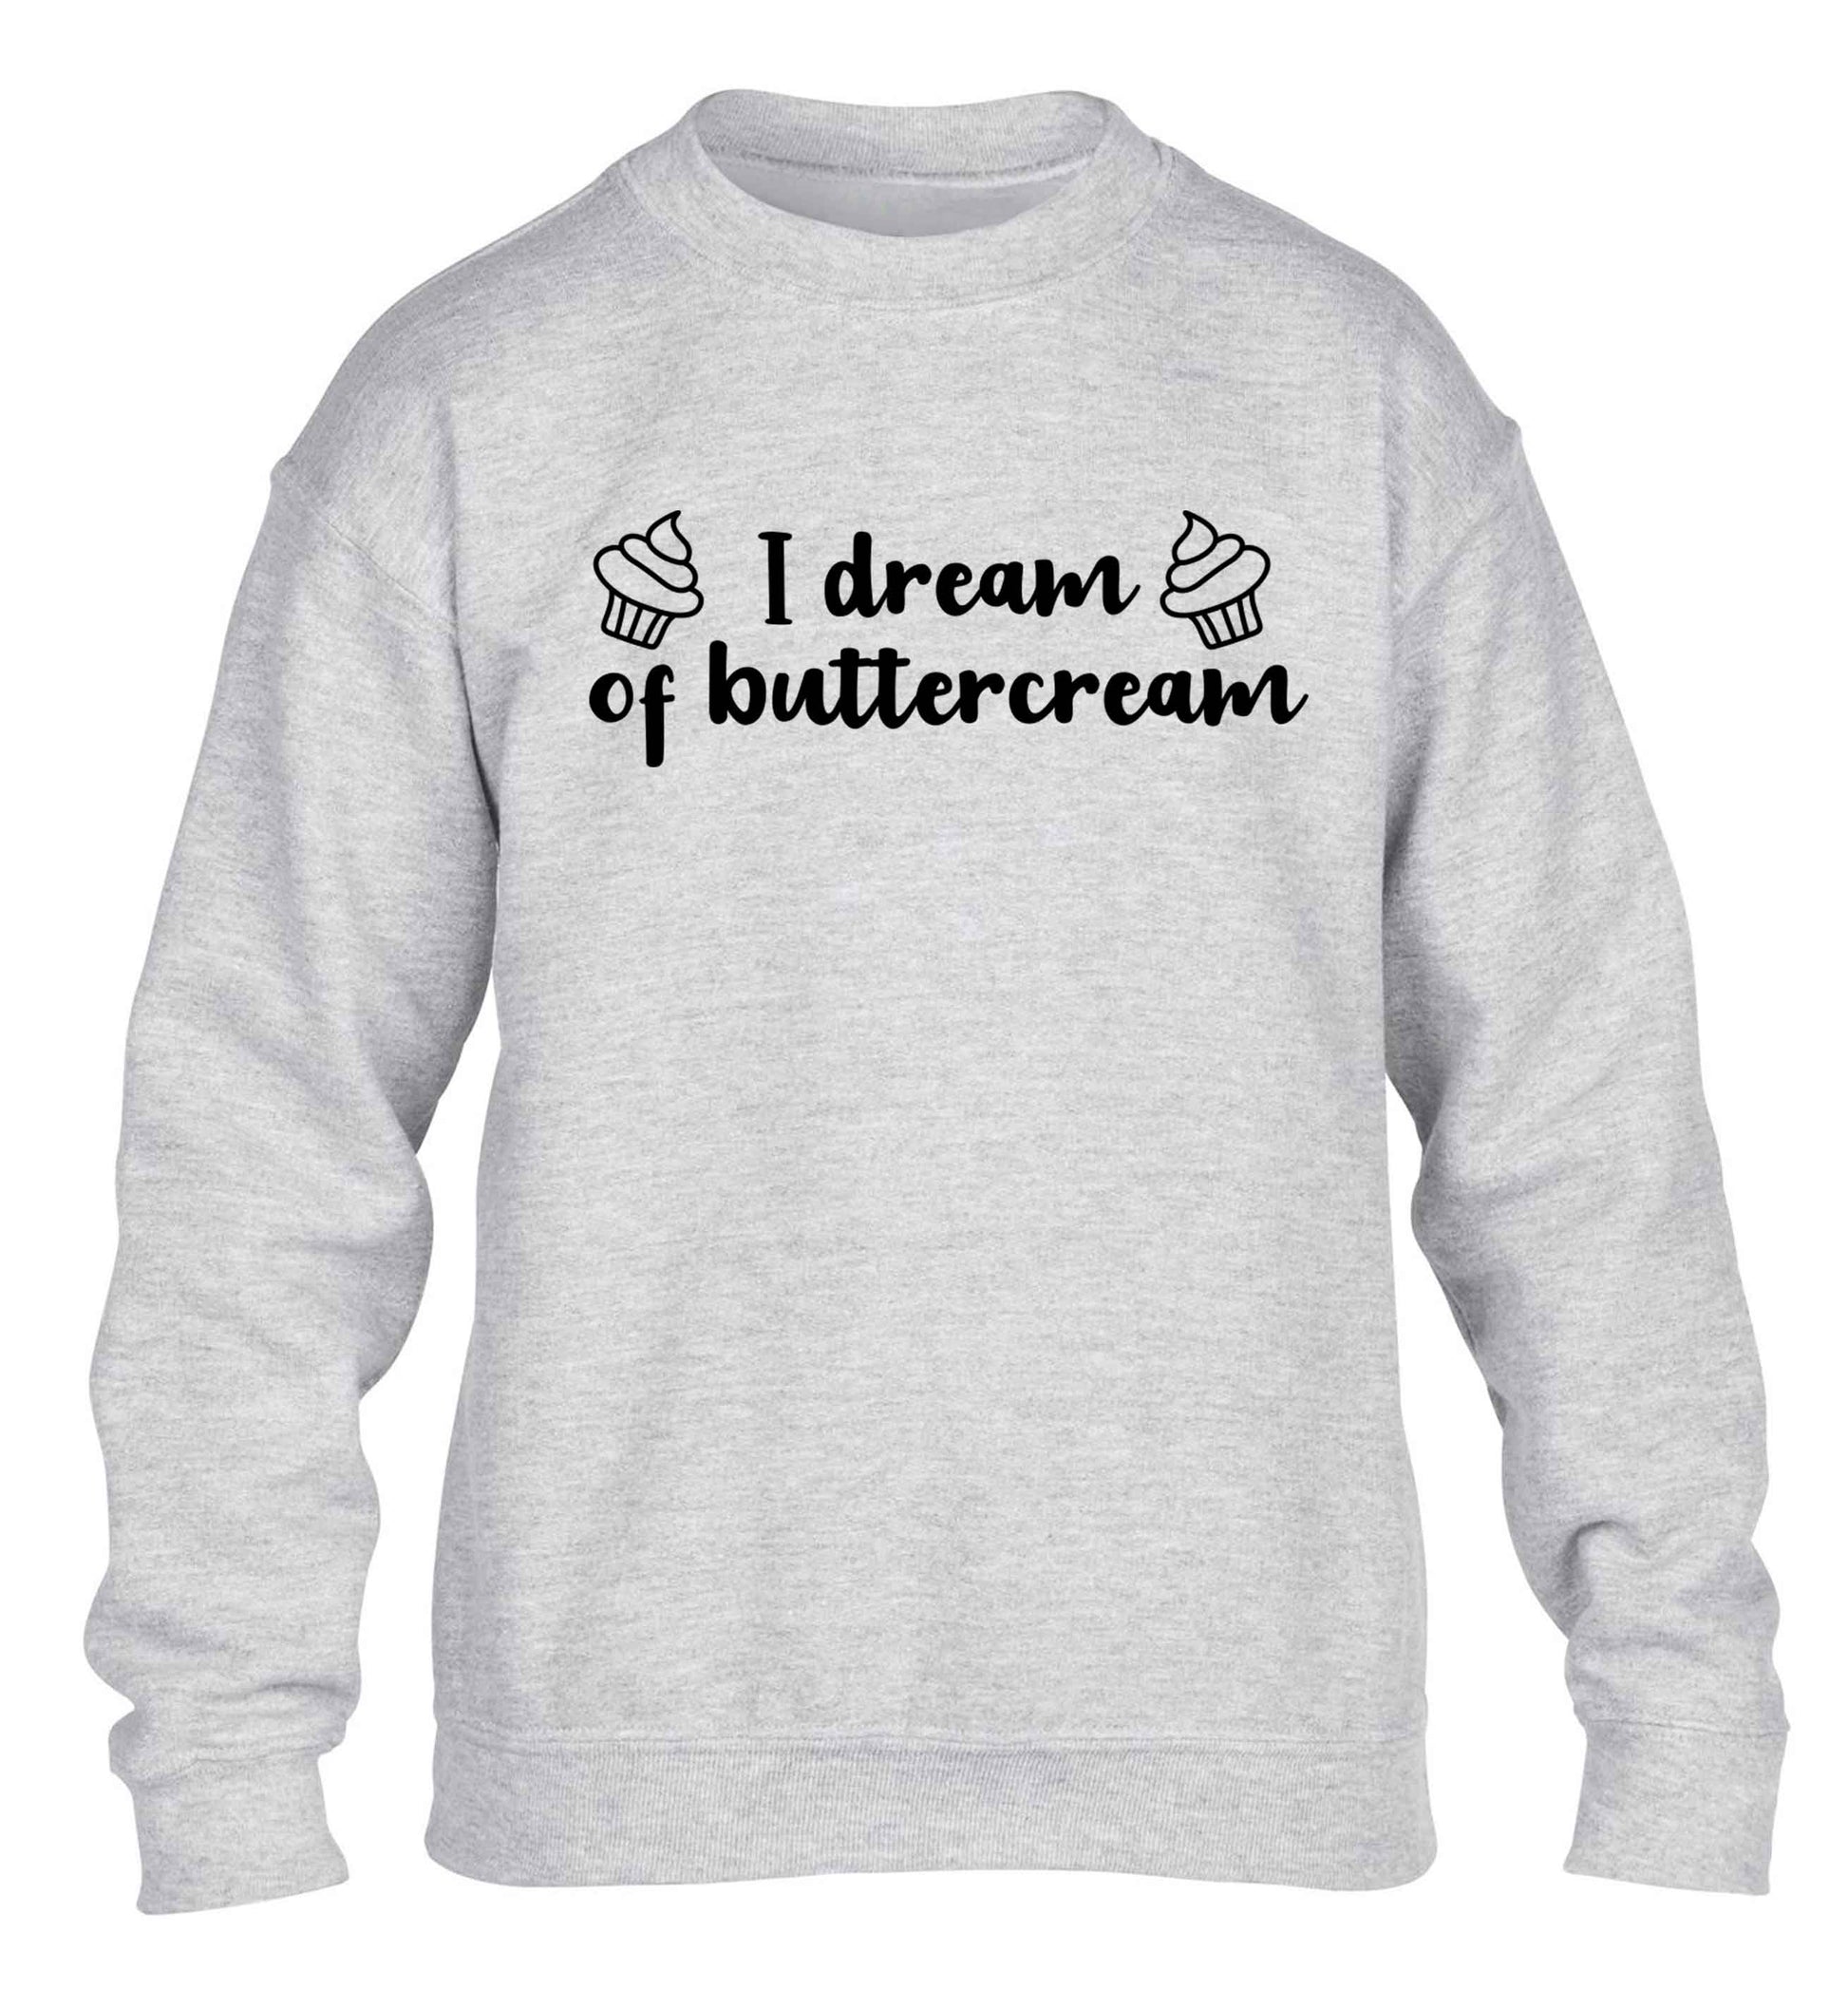 I dream of buttercream children's grey sweater 12-13 Years